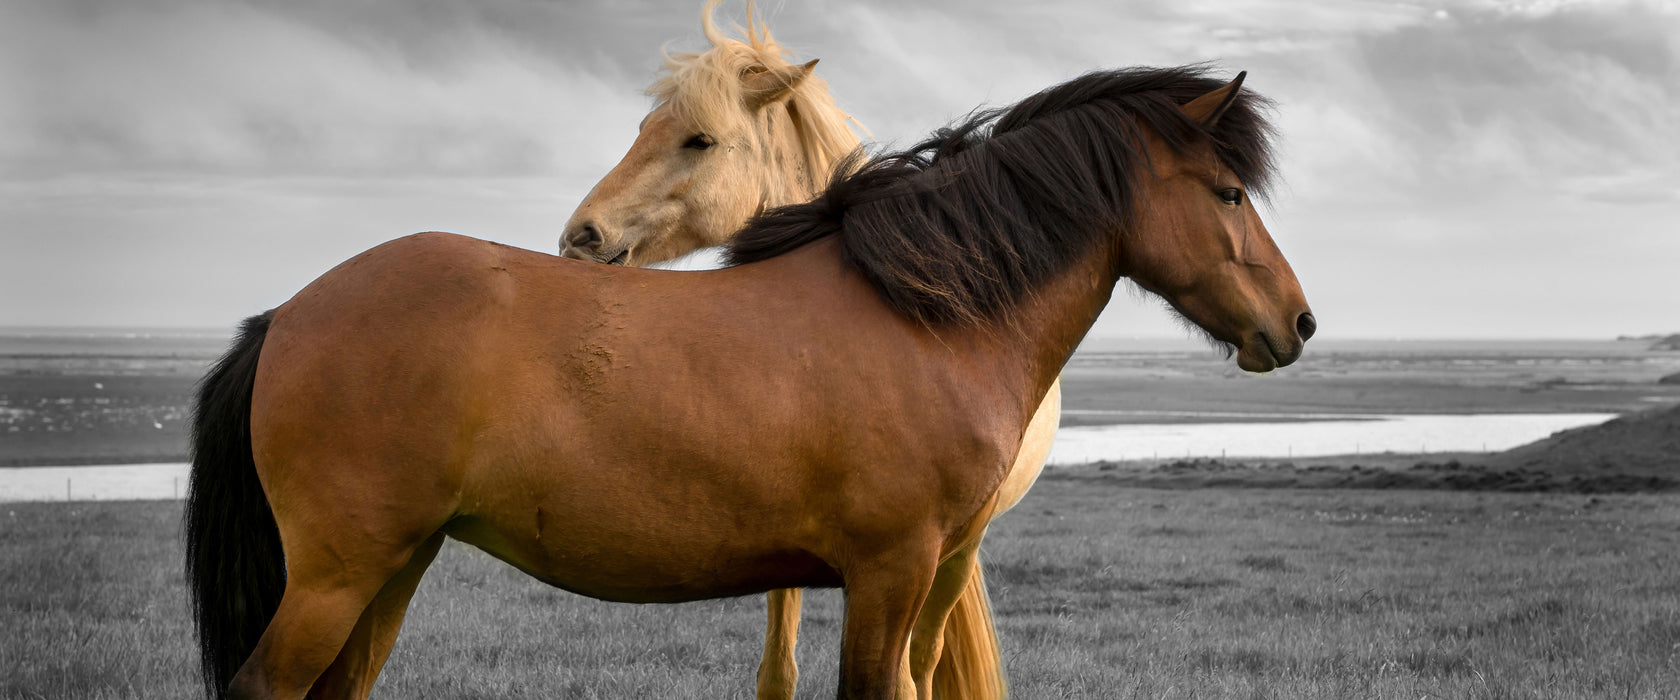 zwei Pferde auf der Wiese, Glasbild Panorama